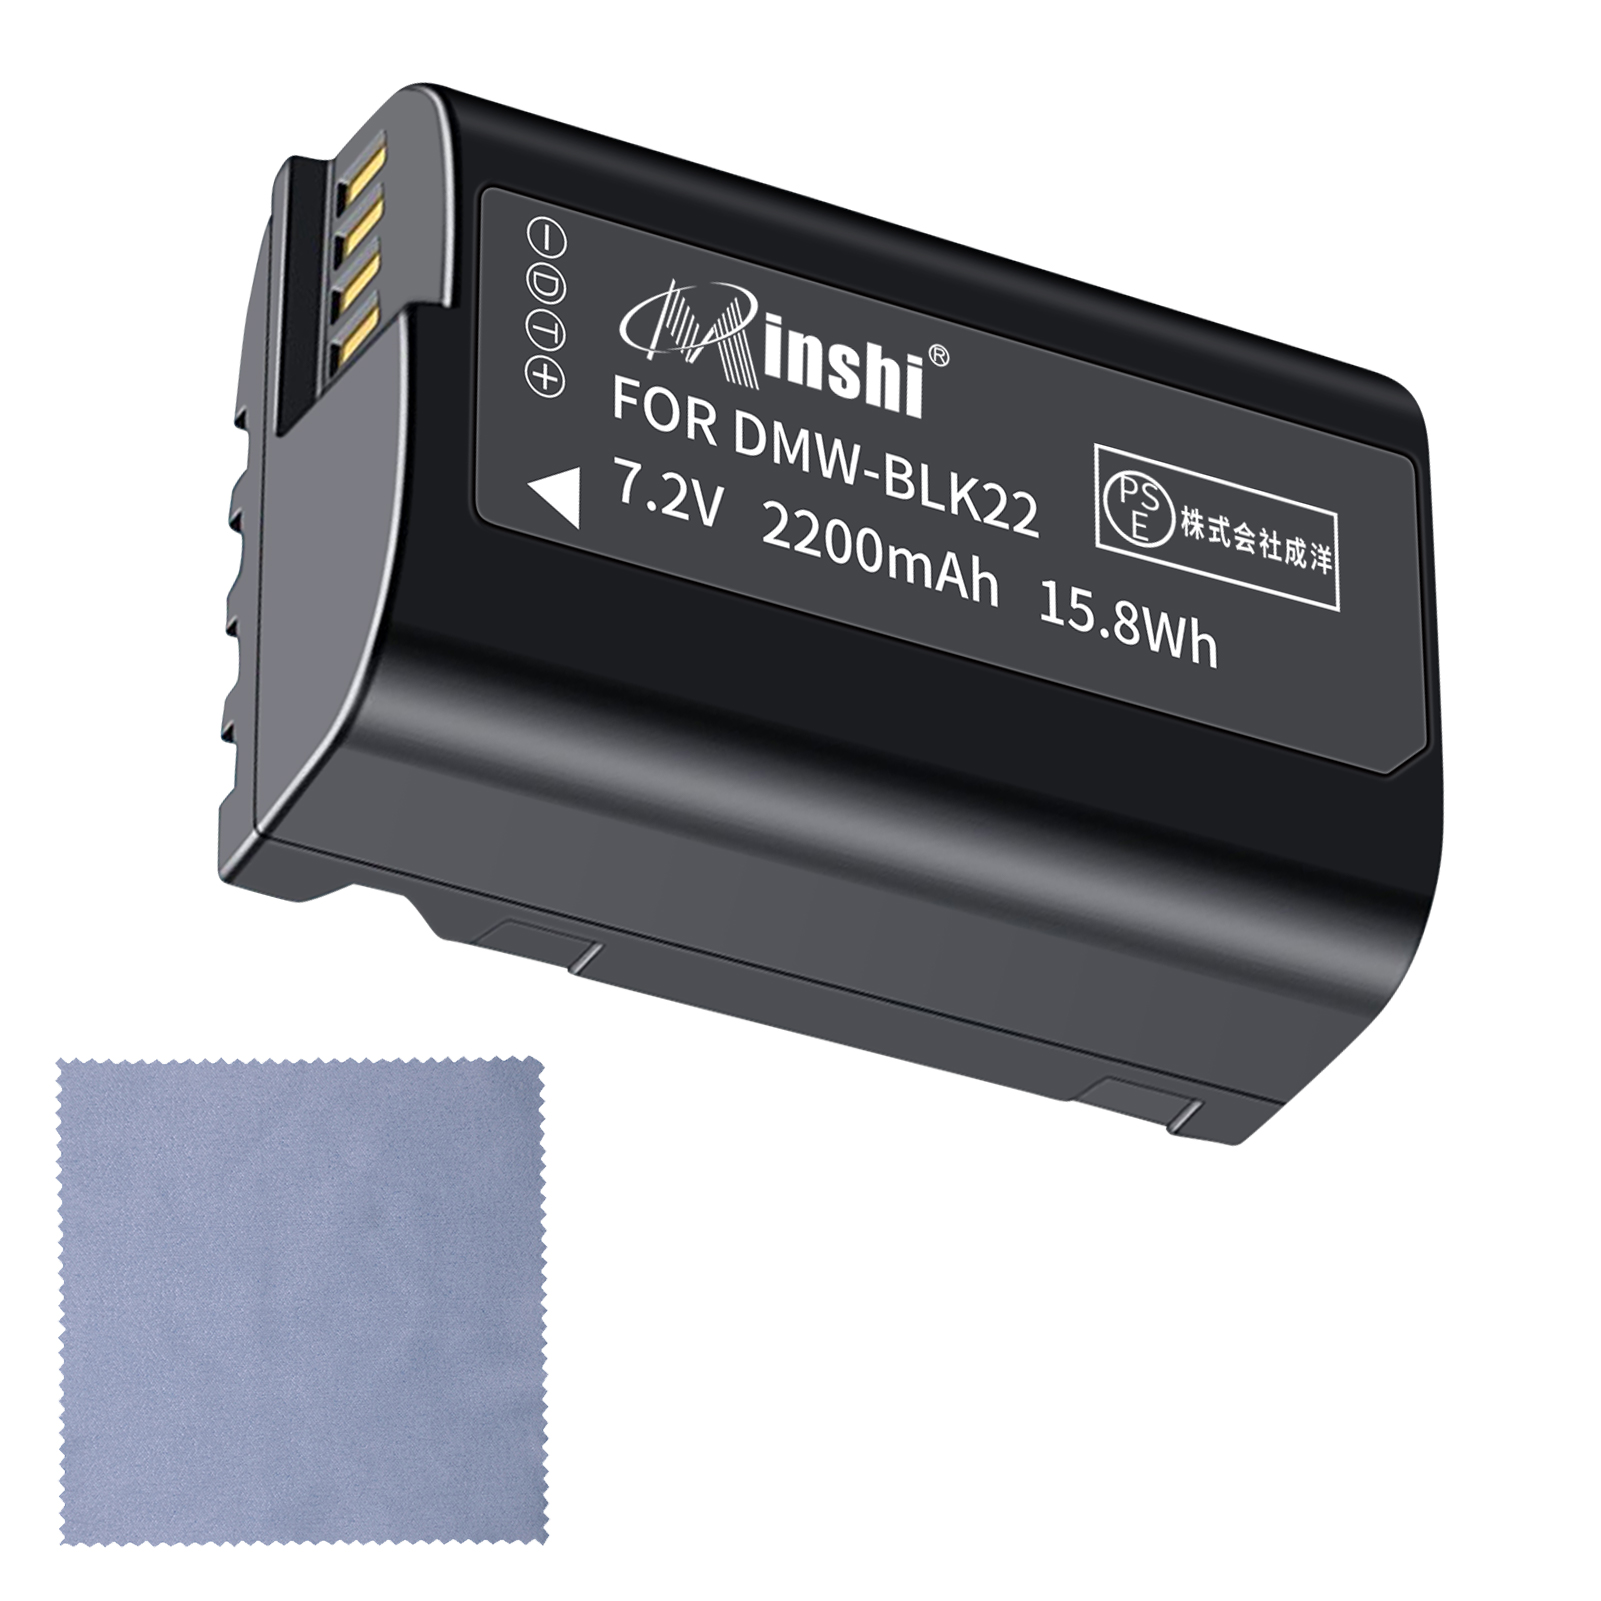 【クロス付き】minshi BLK22GK 【2200mAh 7.2V】PSE認定済 高品質 DMW-BLK22互換バッテリーPHB